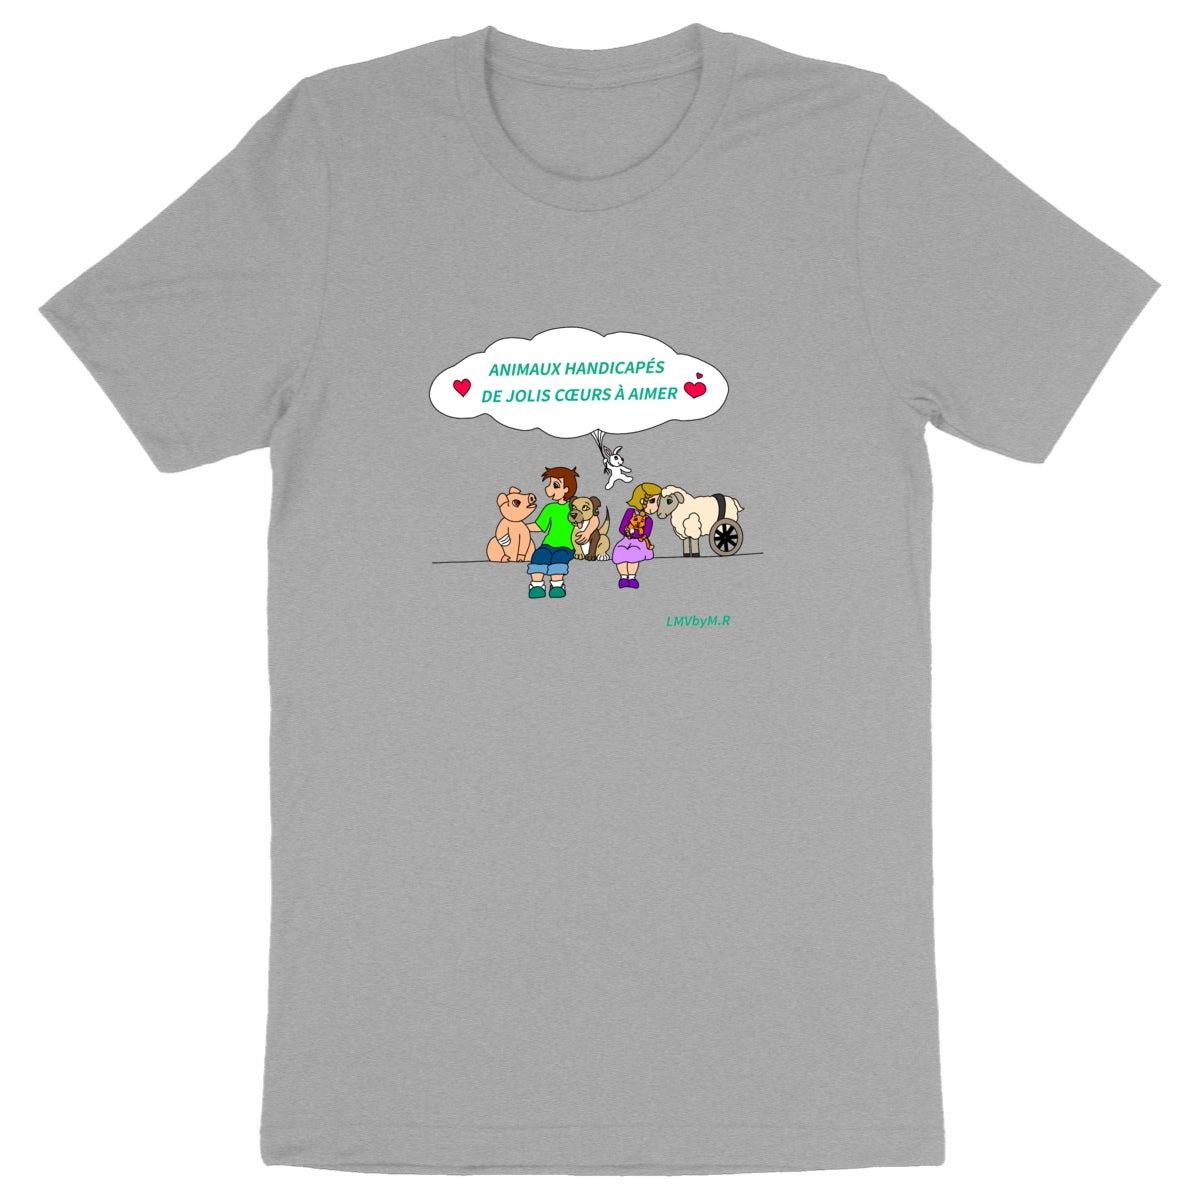 T-shirt HOMME/UNISEXE Bio LMV Animaux Handicapés